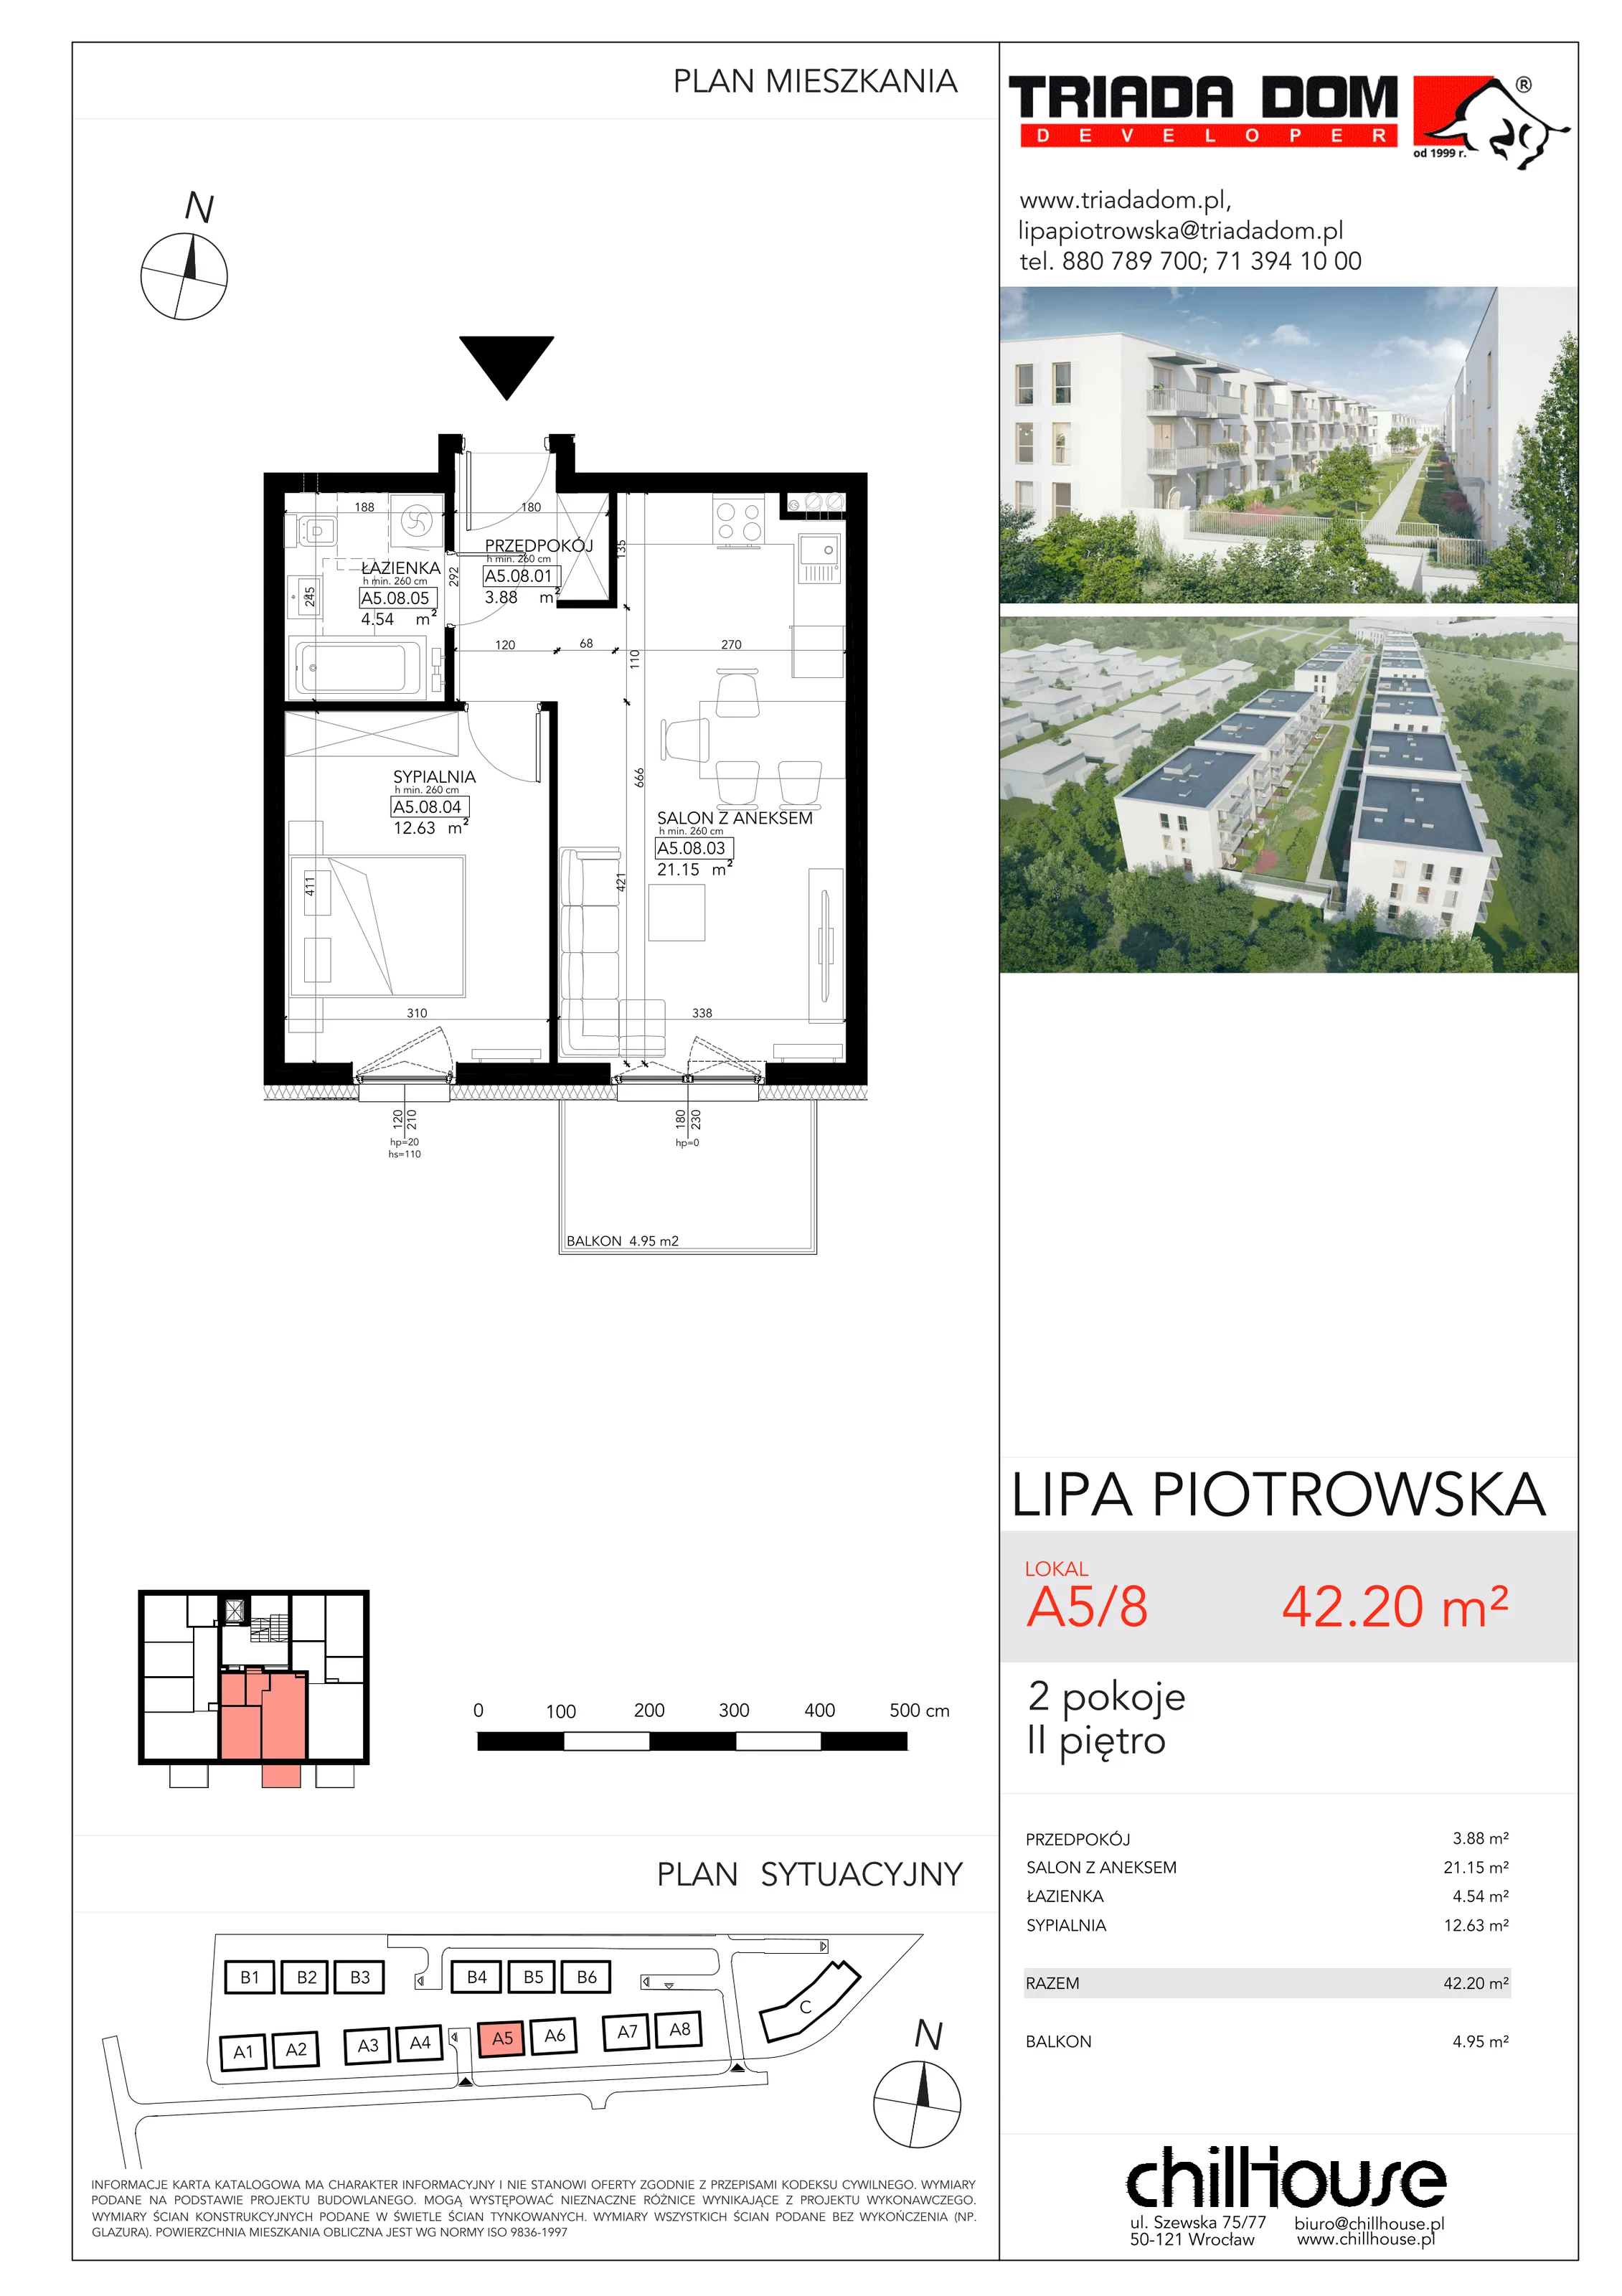 Mieszkanie 42,20 m², piętro 2, oferta nr A58, Lipa Piotrowska, Wrocław, Lipa Piotrowska, ul. Lawendowa / Melisowa